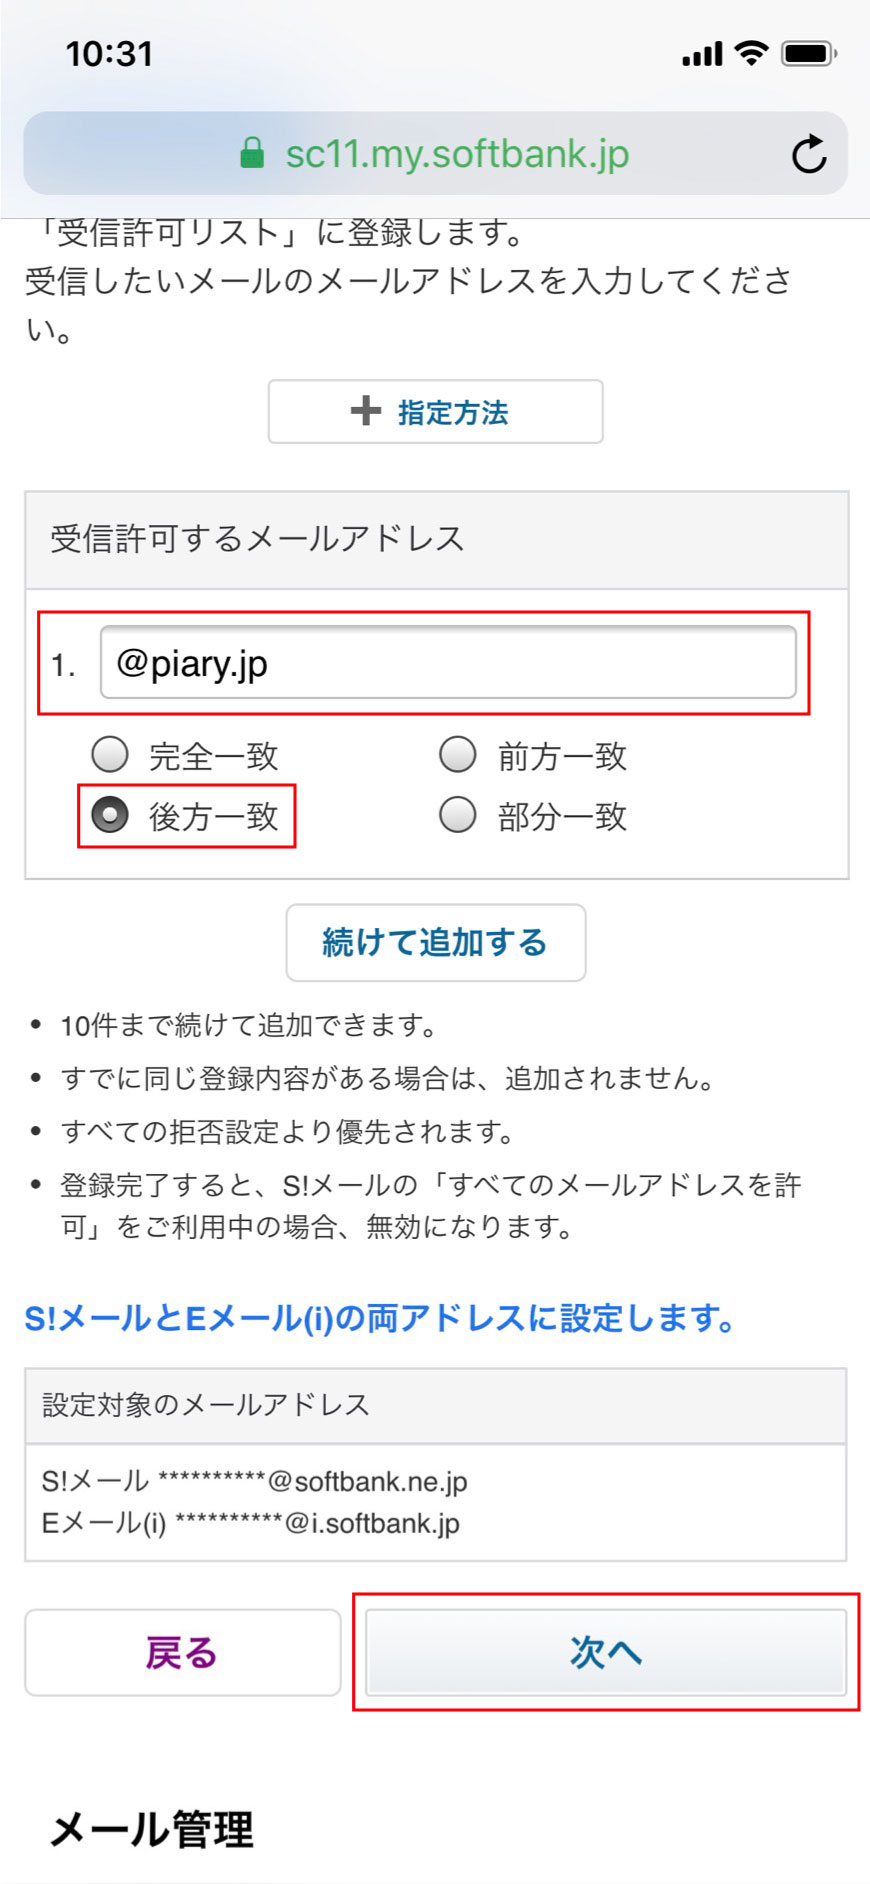 4. 入力欄に【piary.jp】を入力して、【後方一致】を選択し、【次へ】をタップします。